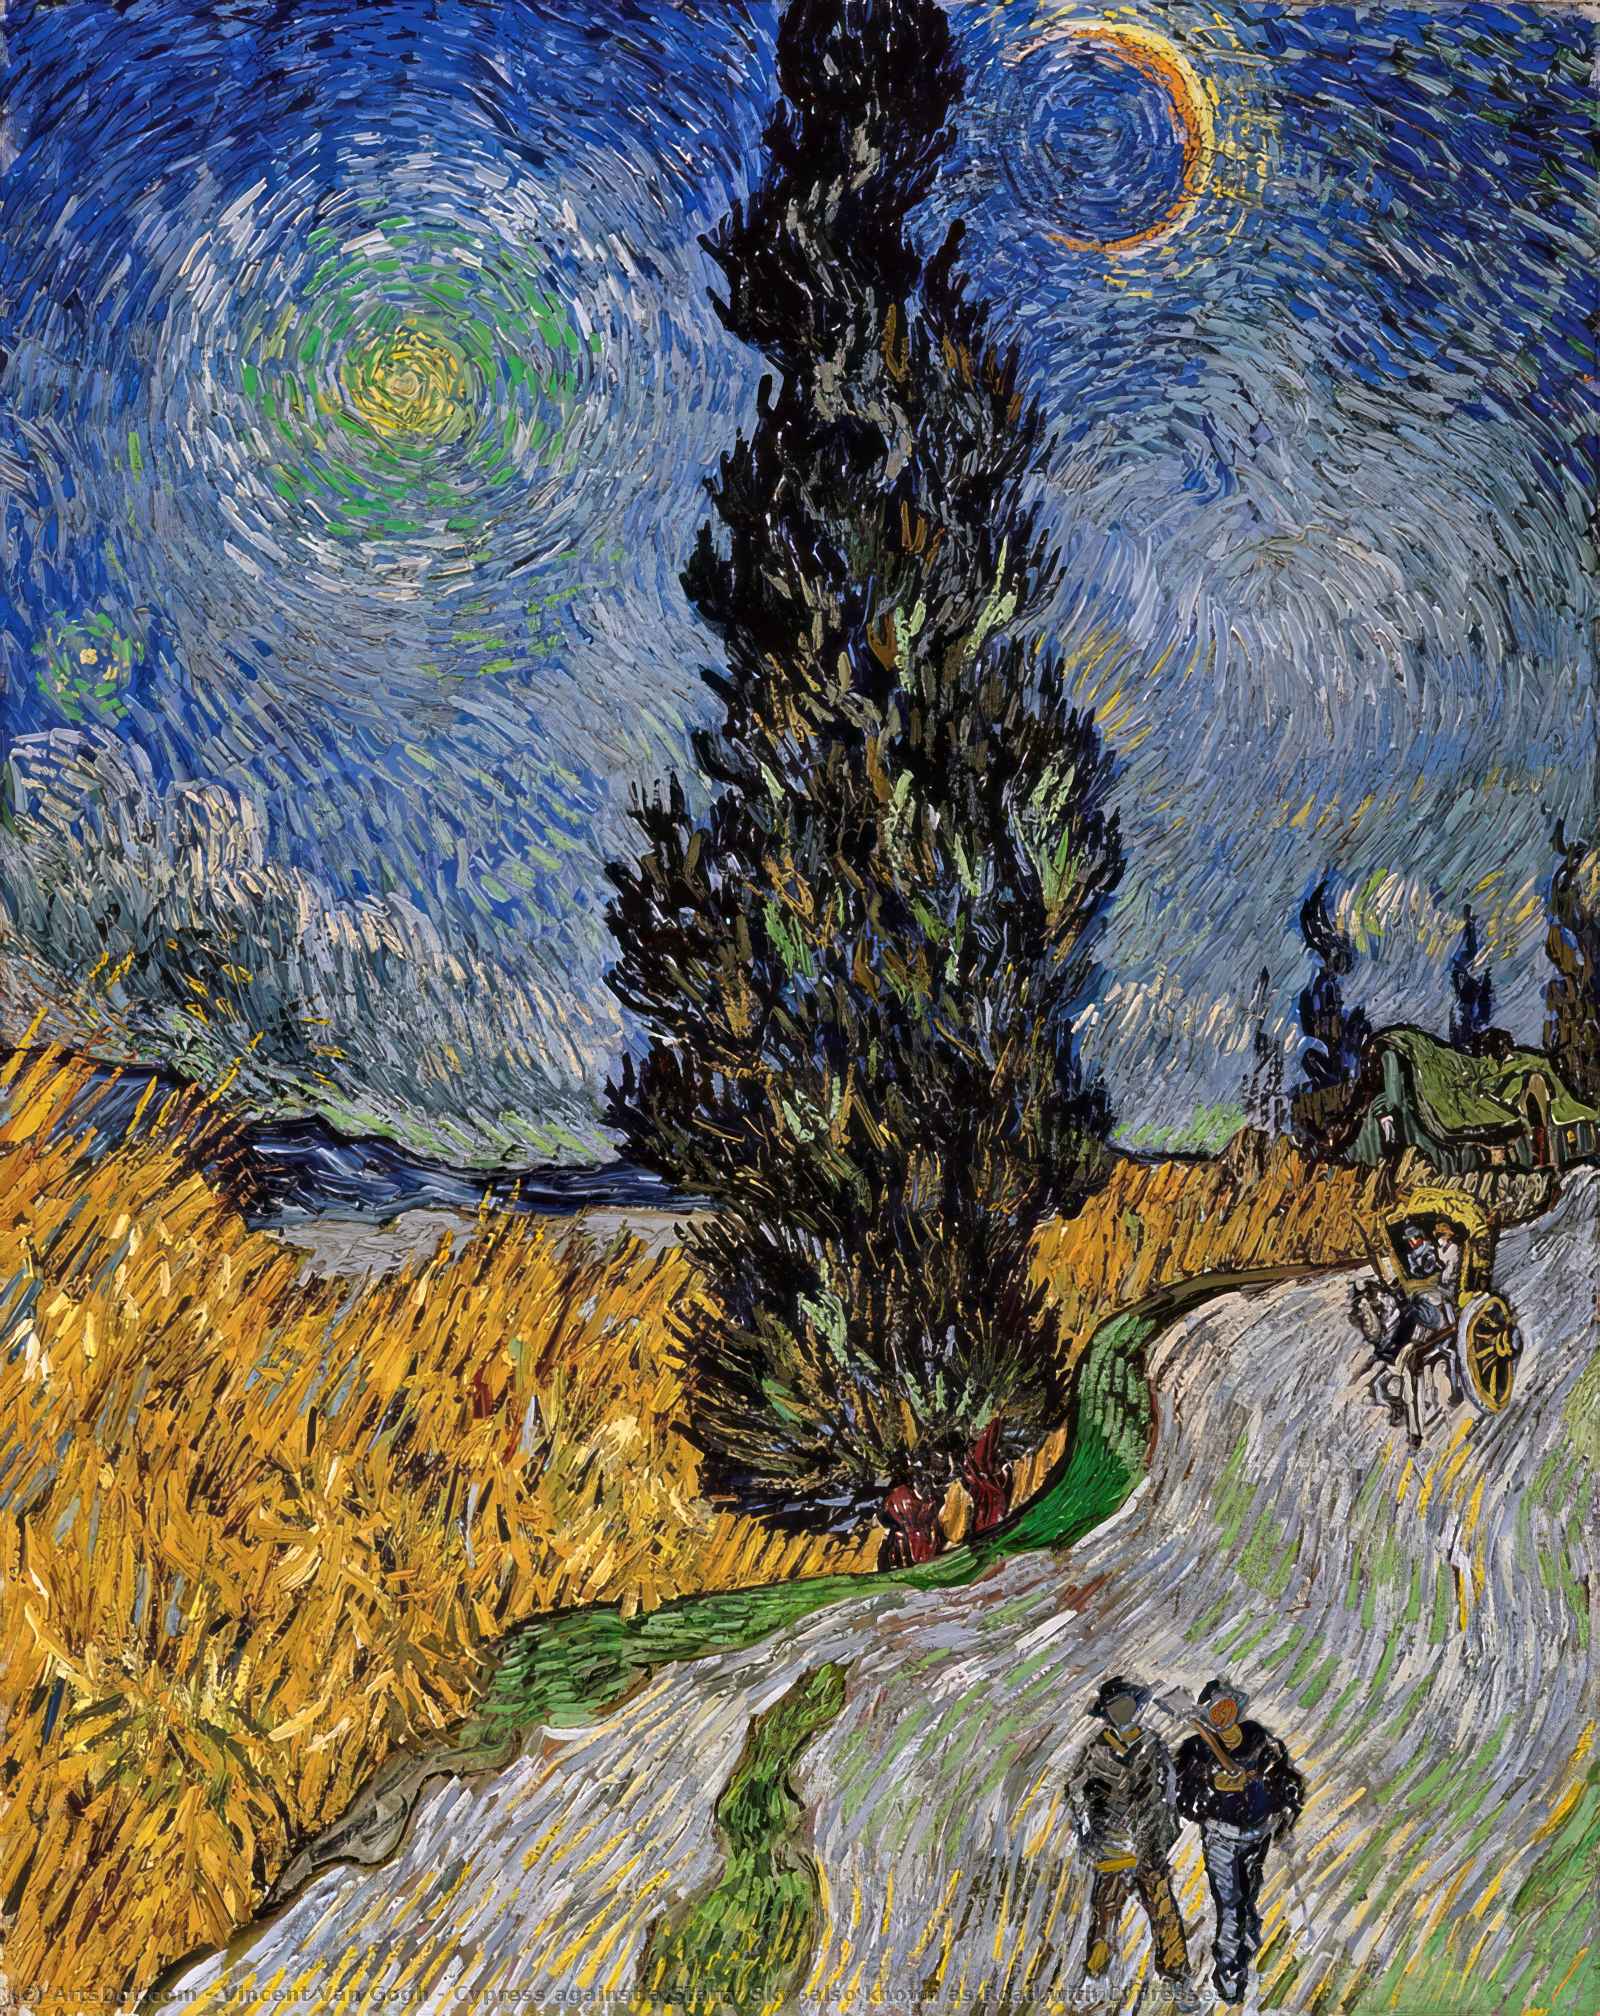 Купить Репродукции Произведений Искусства Cypress против Starry Sky (также известный как Road with Cypresses), 1890 по Vincent Van Gogh (1853-1890, Netherlands) | ArtsDot.com